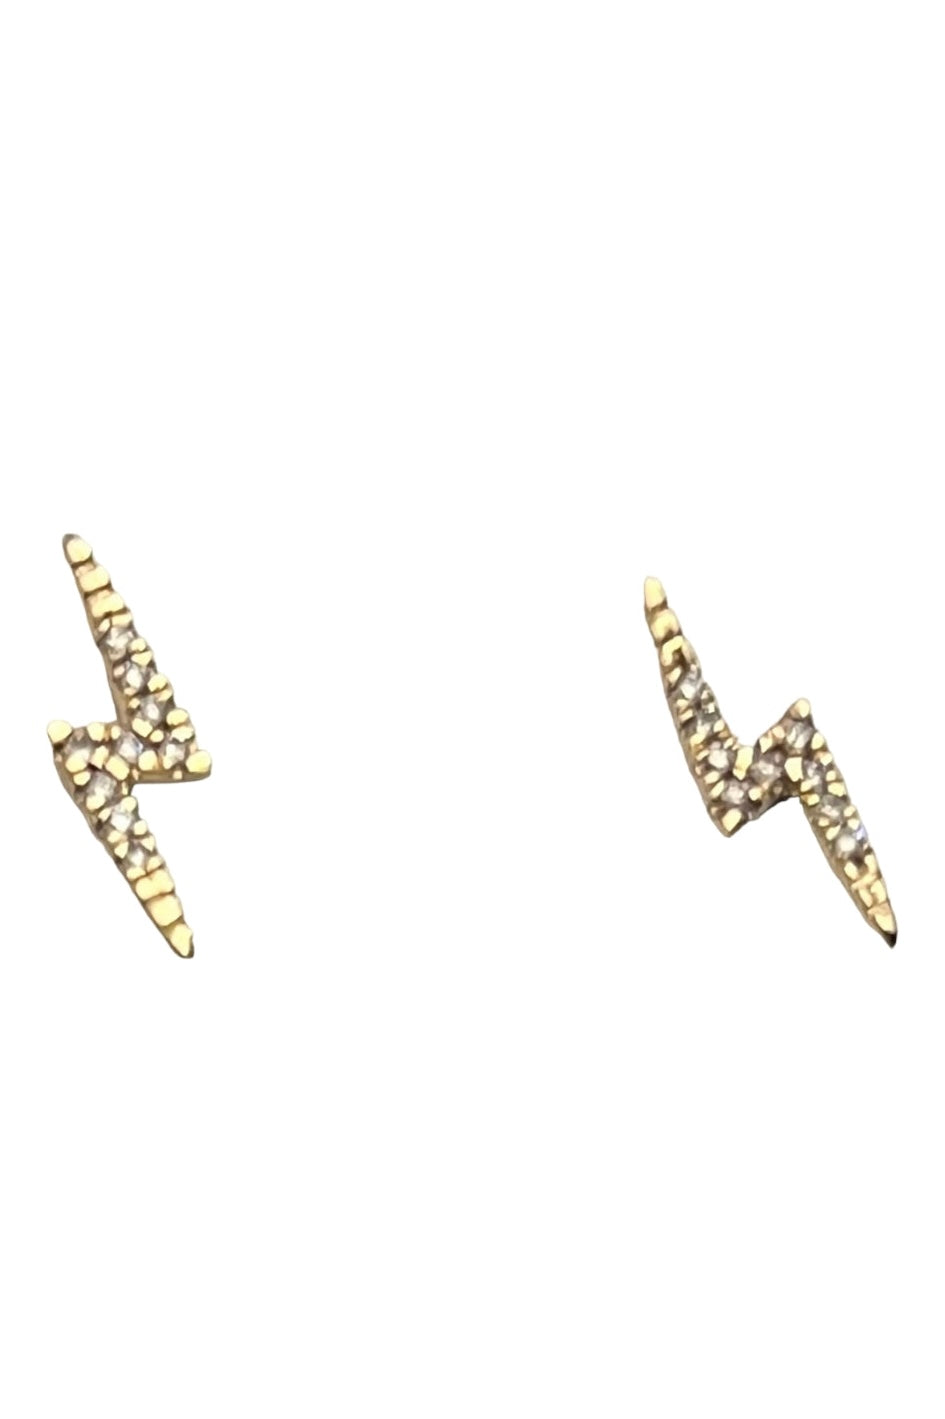 S.Row Designs Diamond Lightning Bolt Earrings